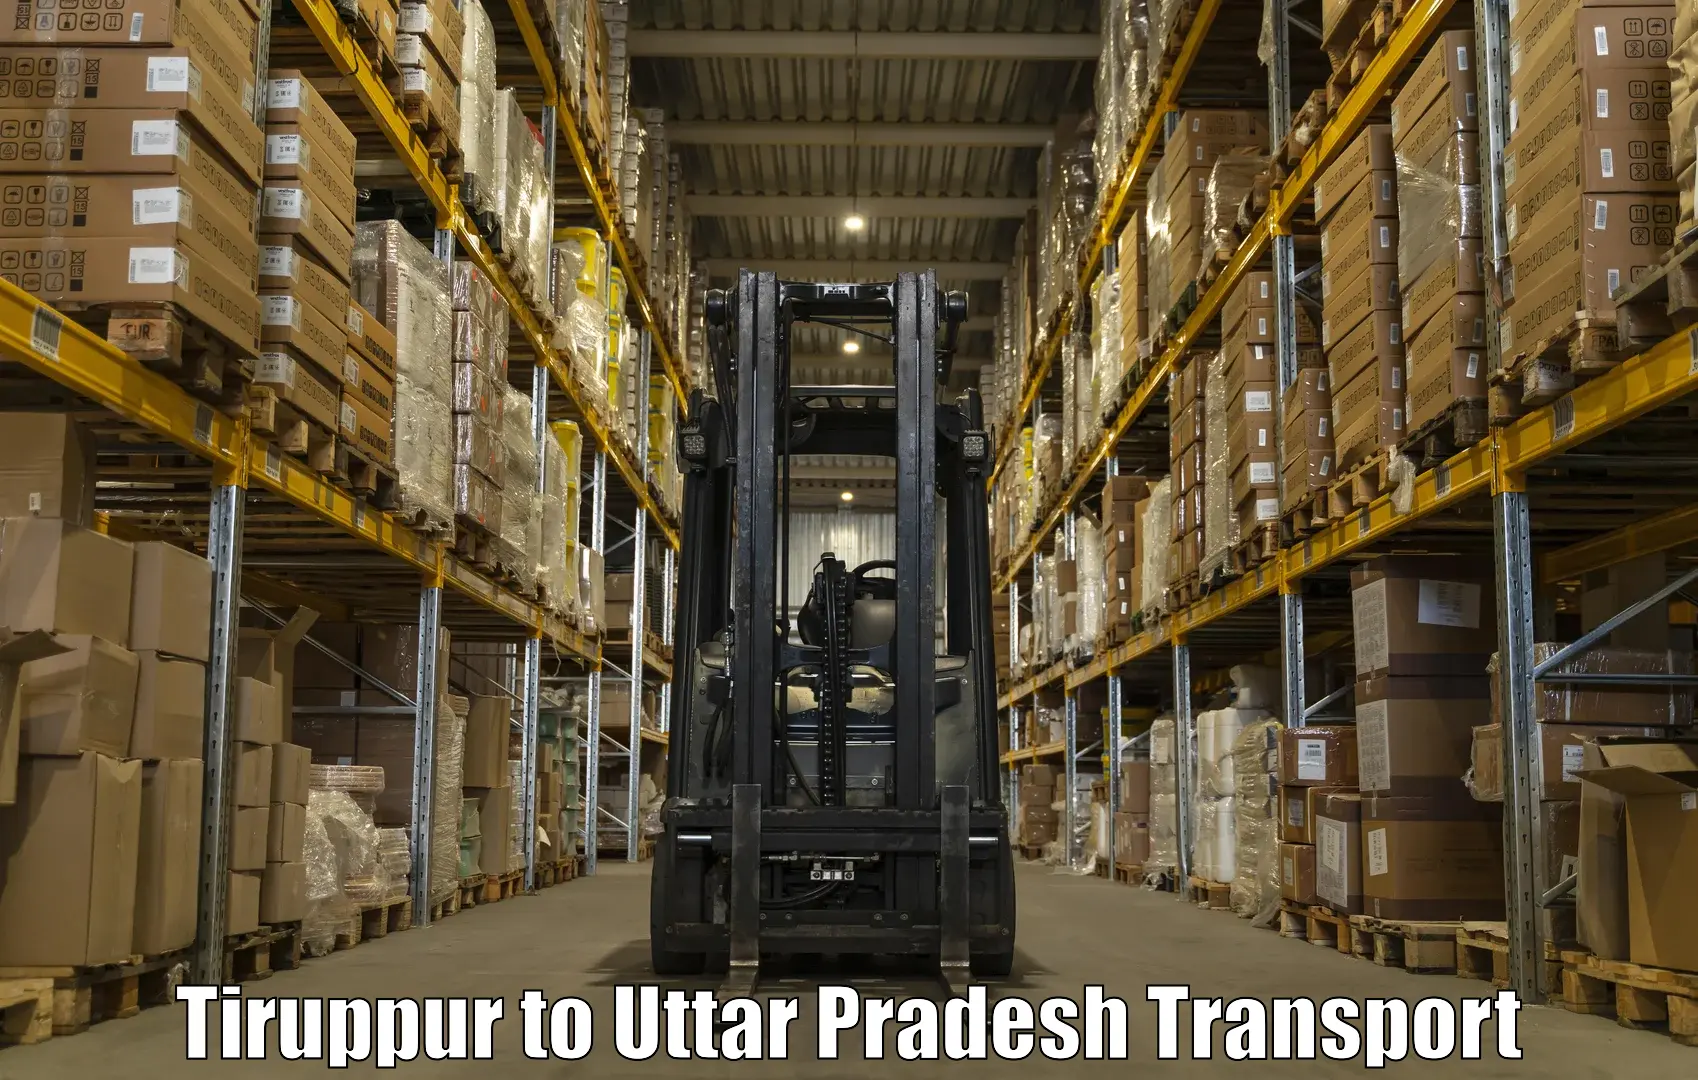 Online transport service Tiruppur to Ghorawal